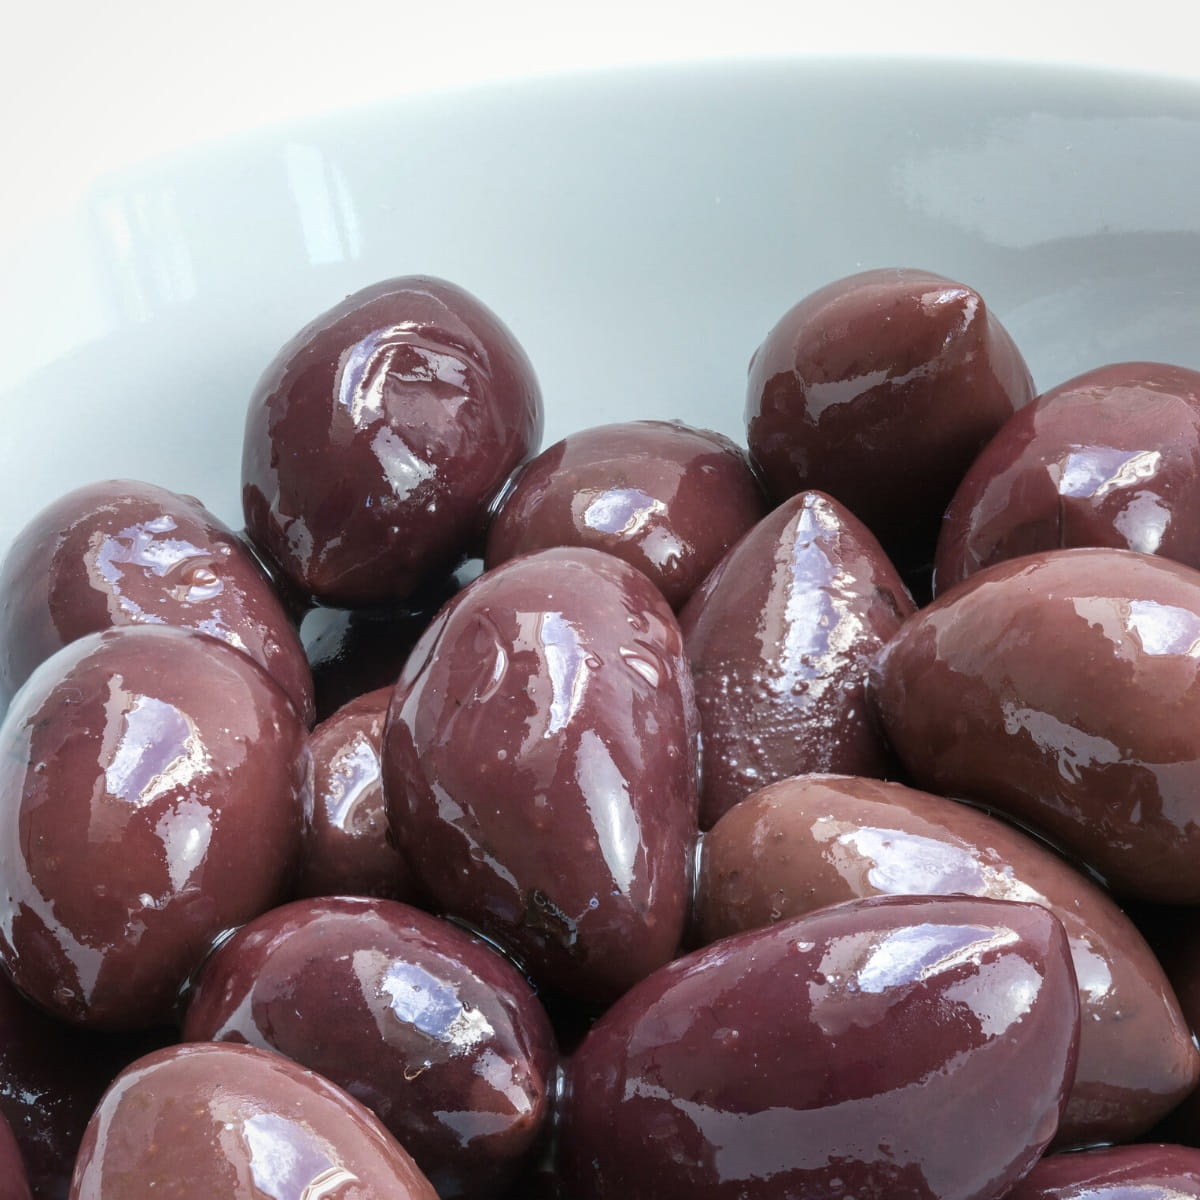 Kalamata olives in a bowl